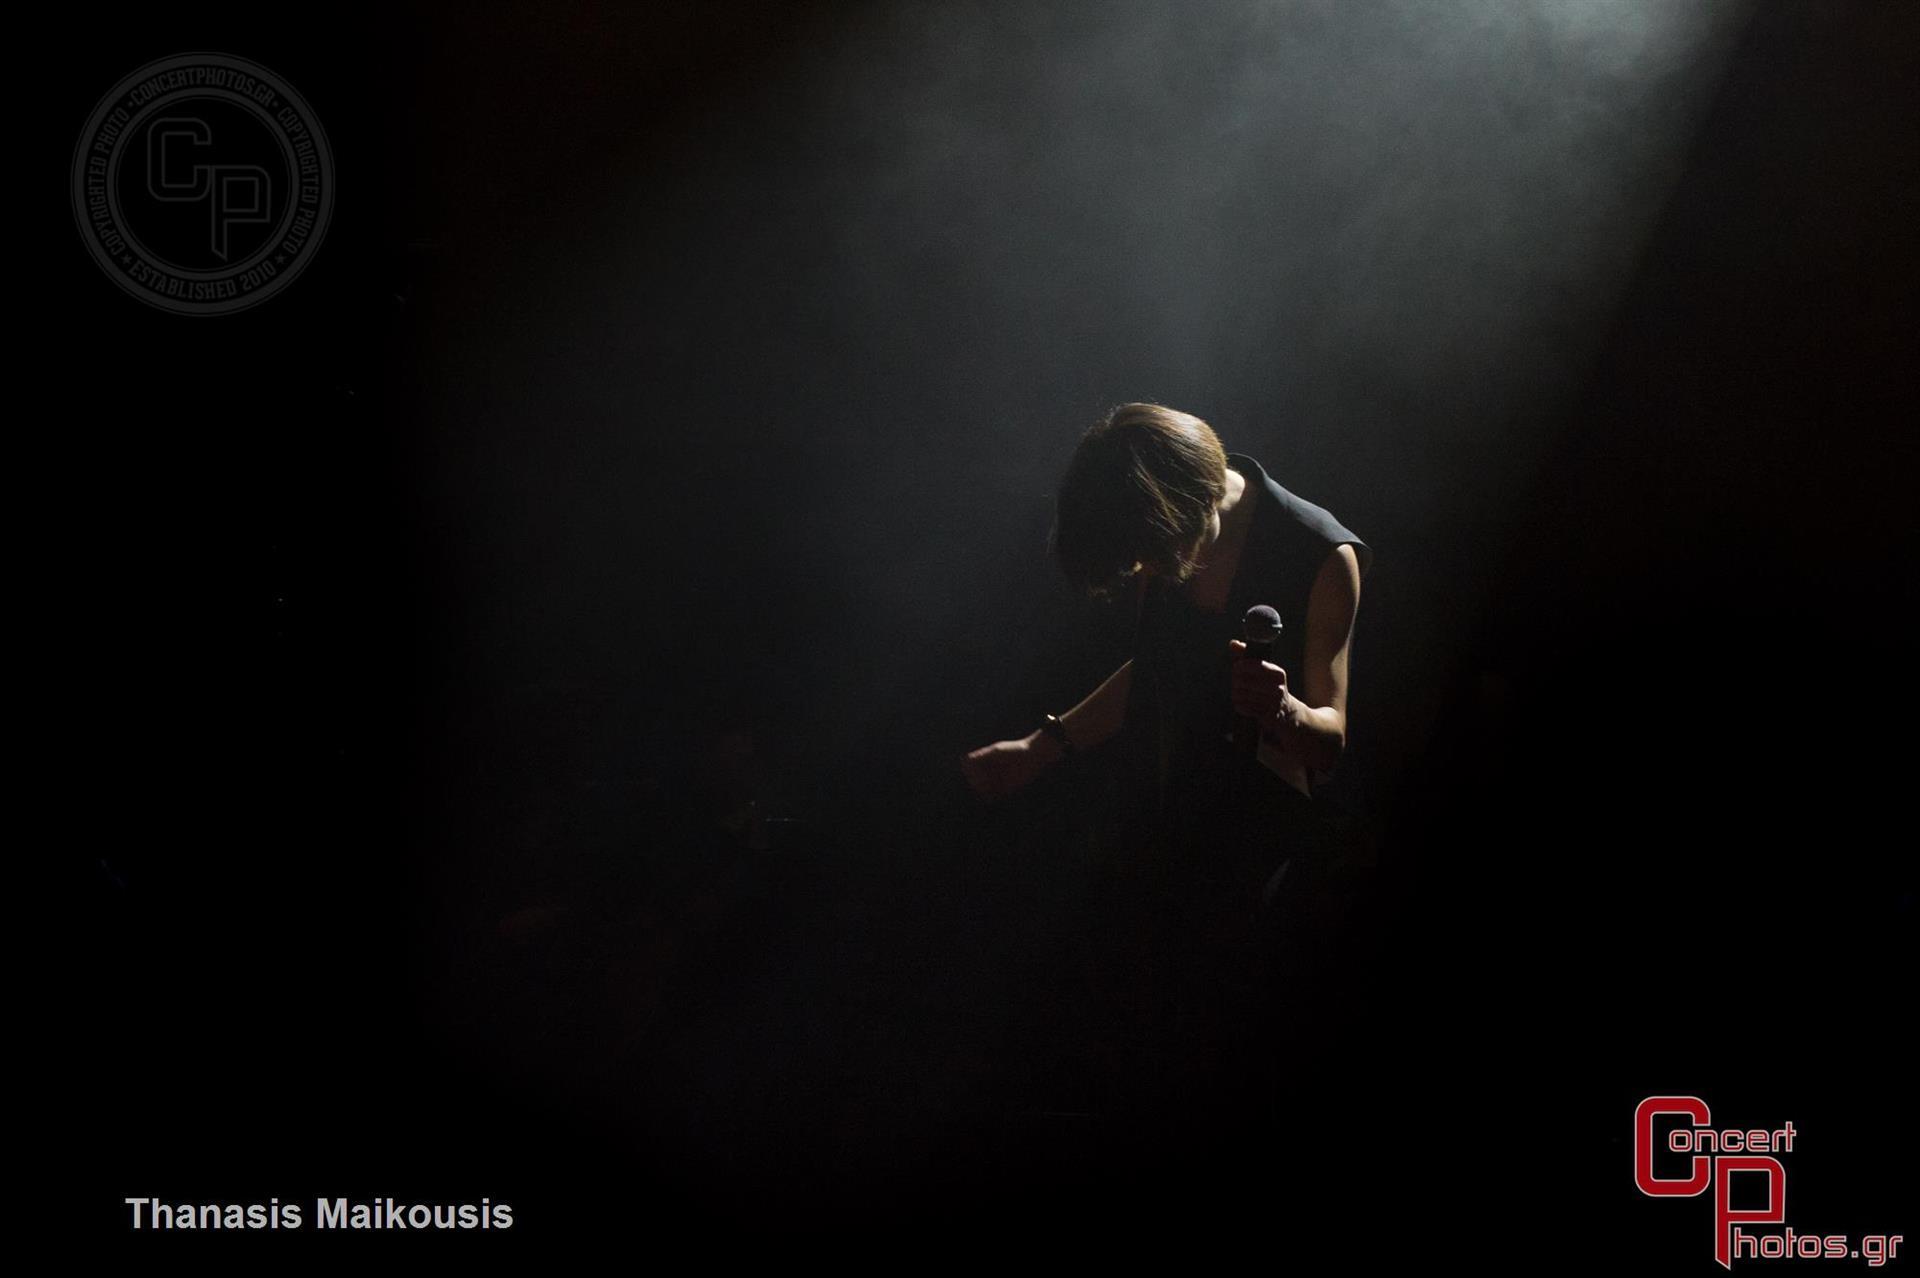 Monika-Monika photographer: Thanasis Maikousis - ConcertPhotos - 20150227_2315_35